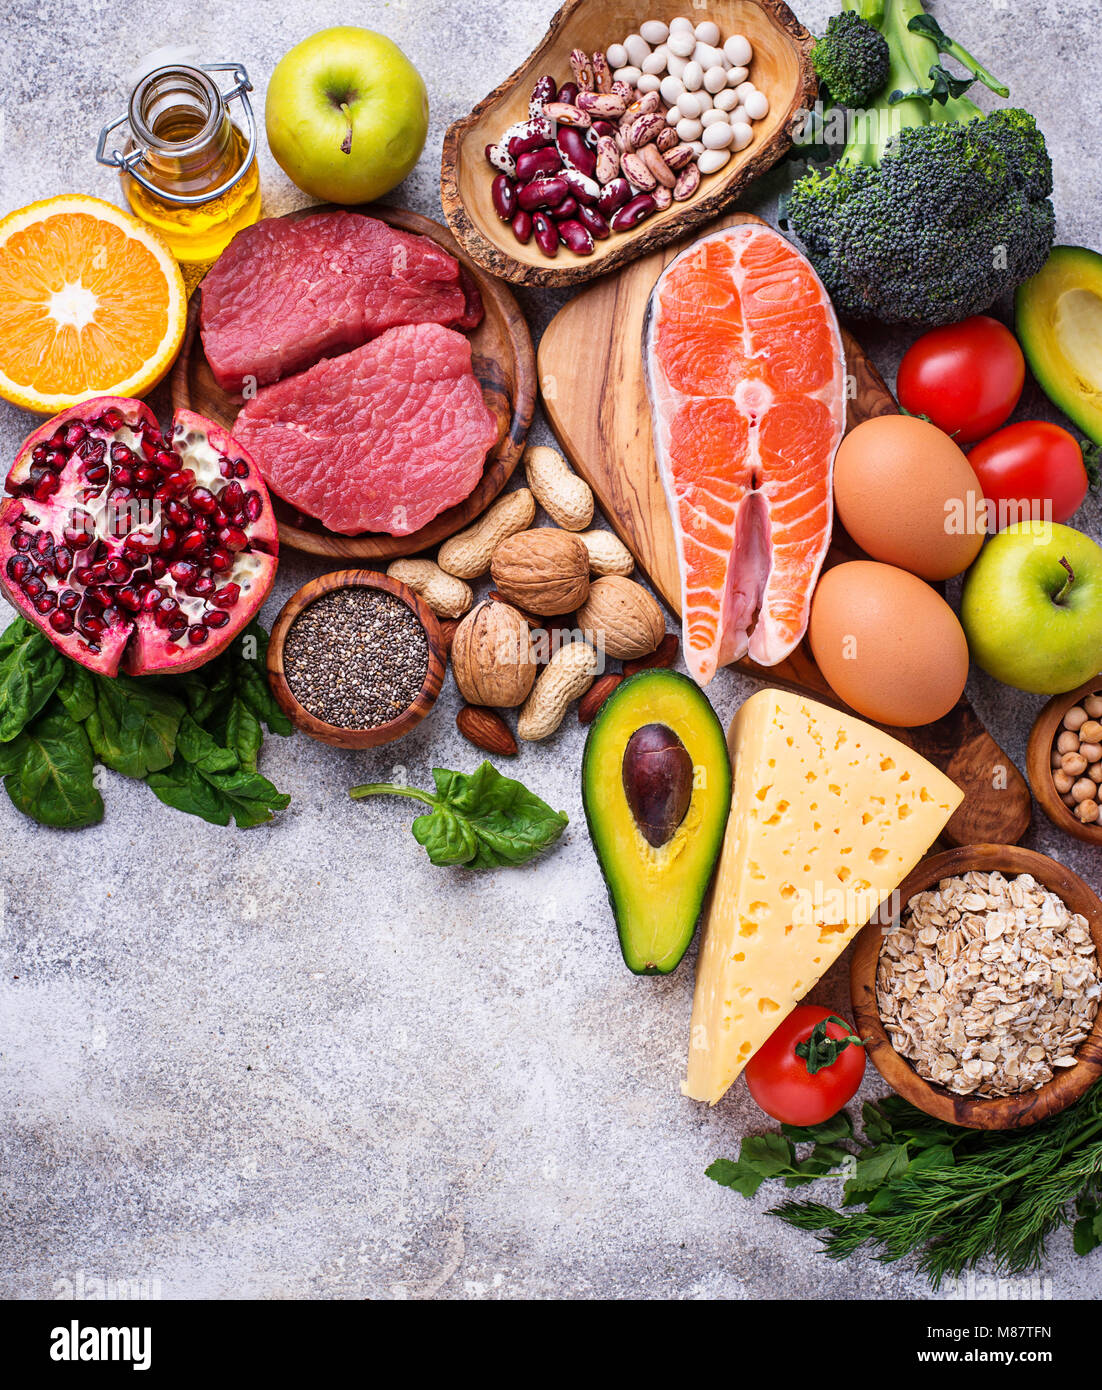 Les Aliments Biologiques Pour Une Alimentation Saine Et De L Air Photo Stock Alamy